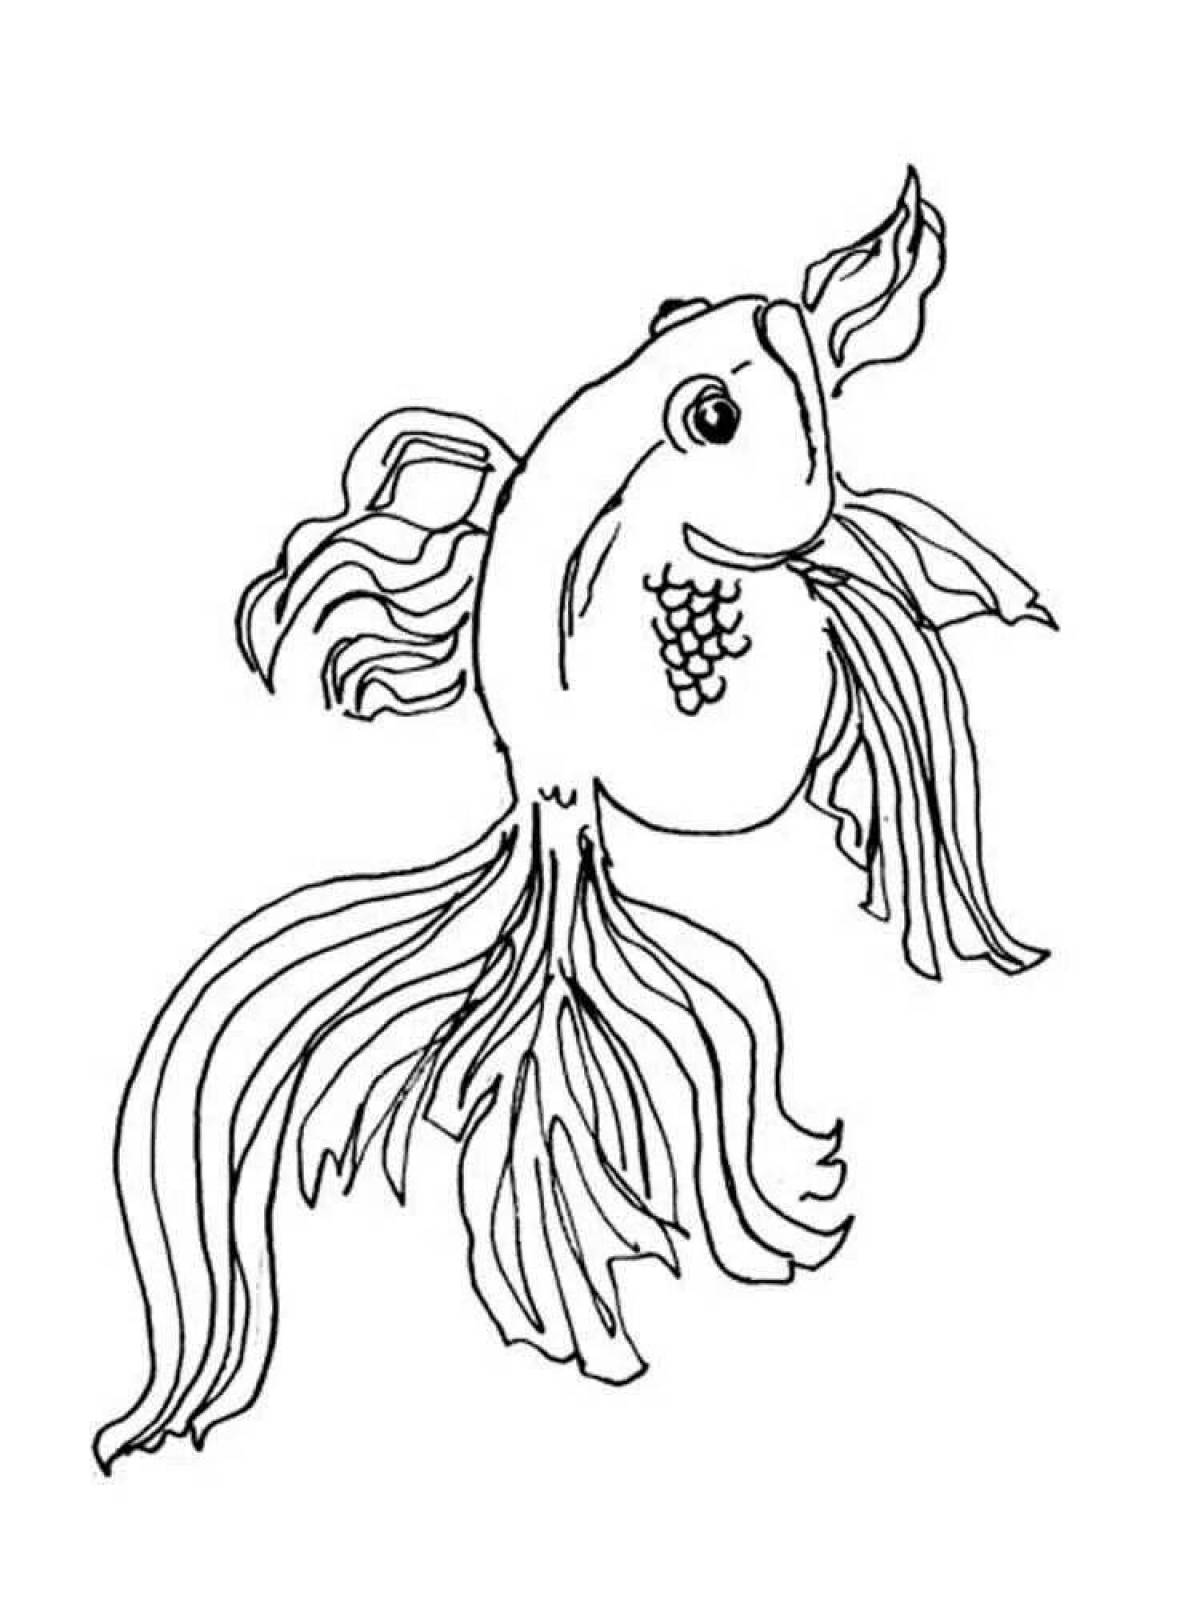 Экзотический рисунок золотой рыбки